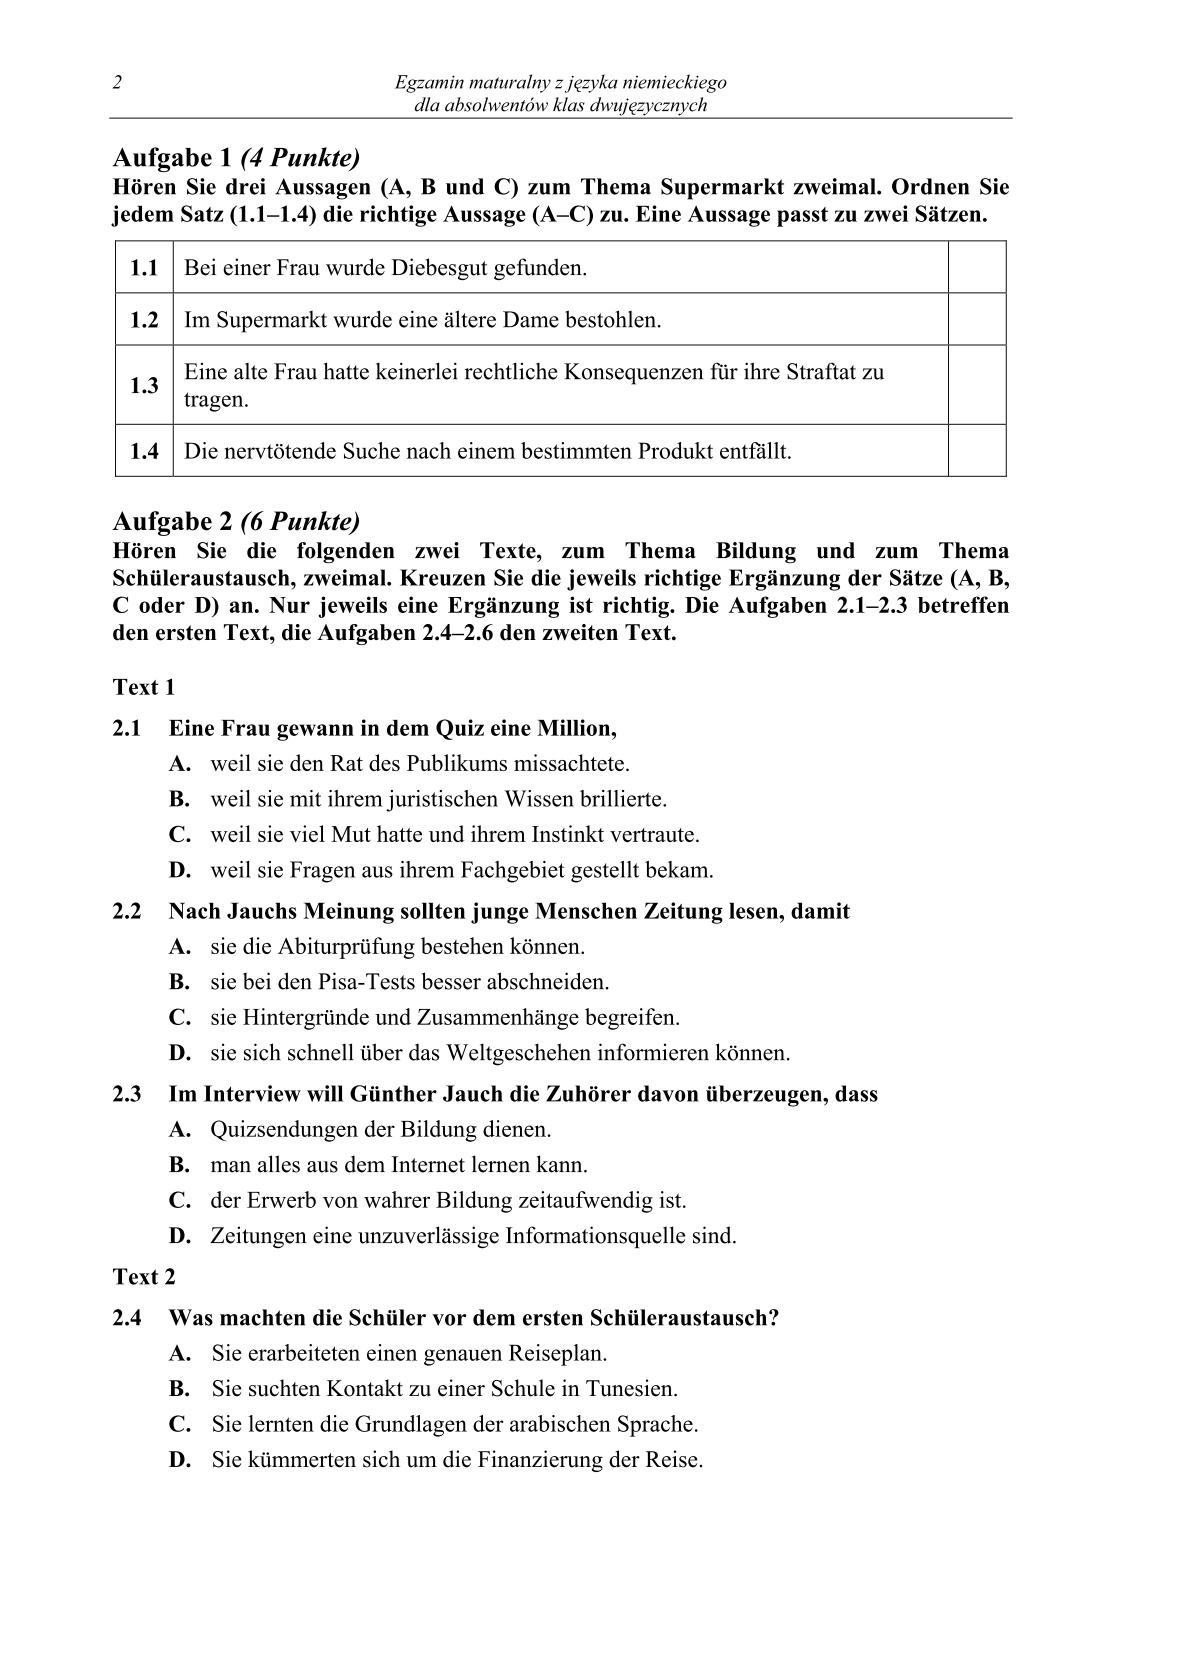 pytania-jezyk-niemiecki-dla-absolwentow-klas-dwujezycznych-matura-2014-str.2